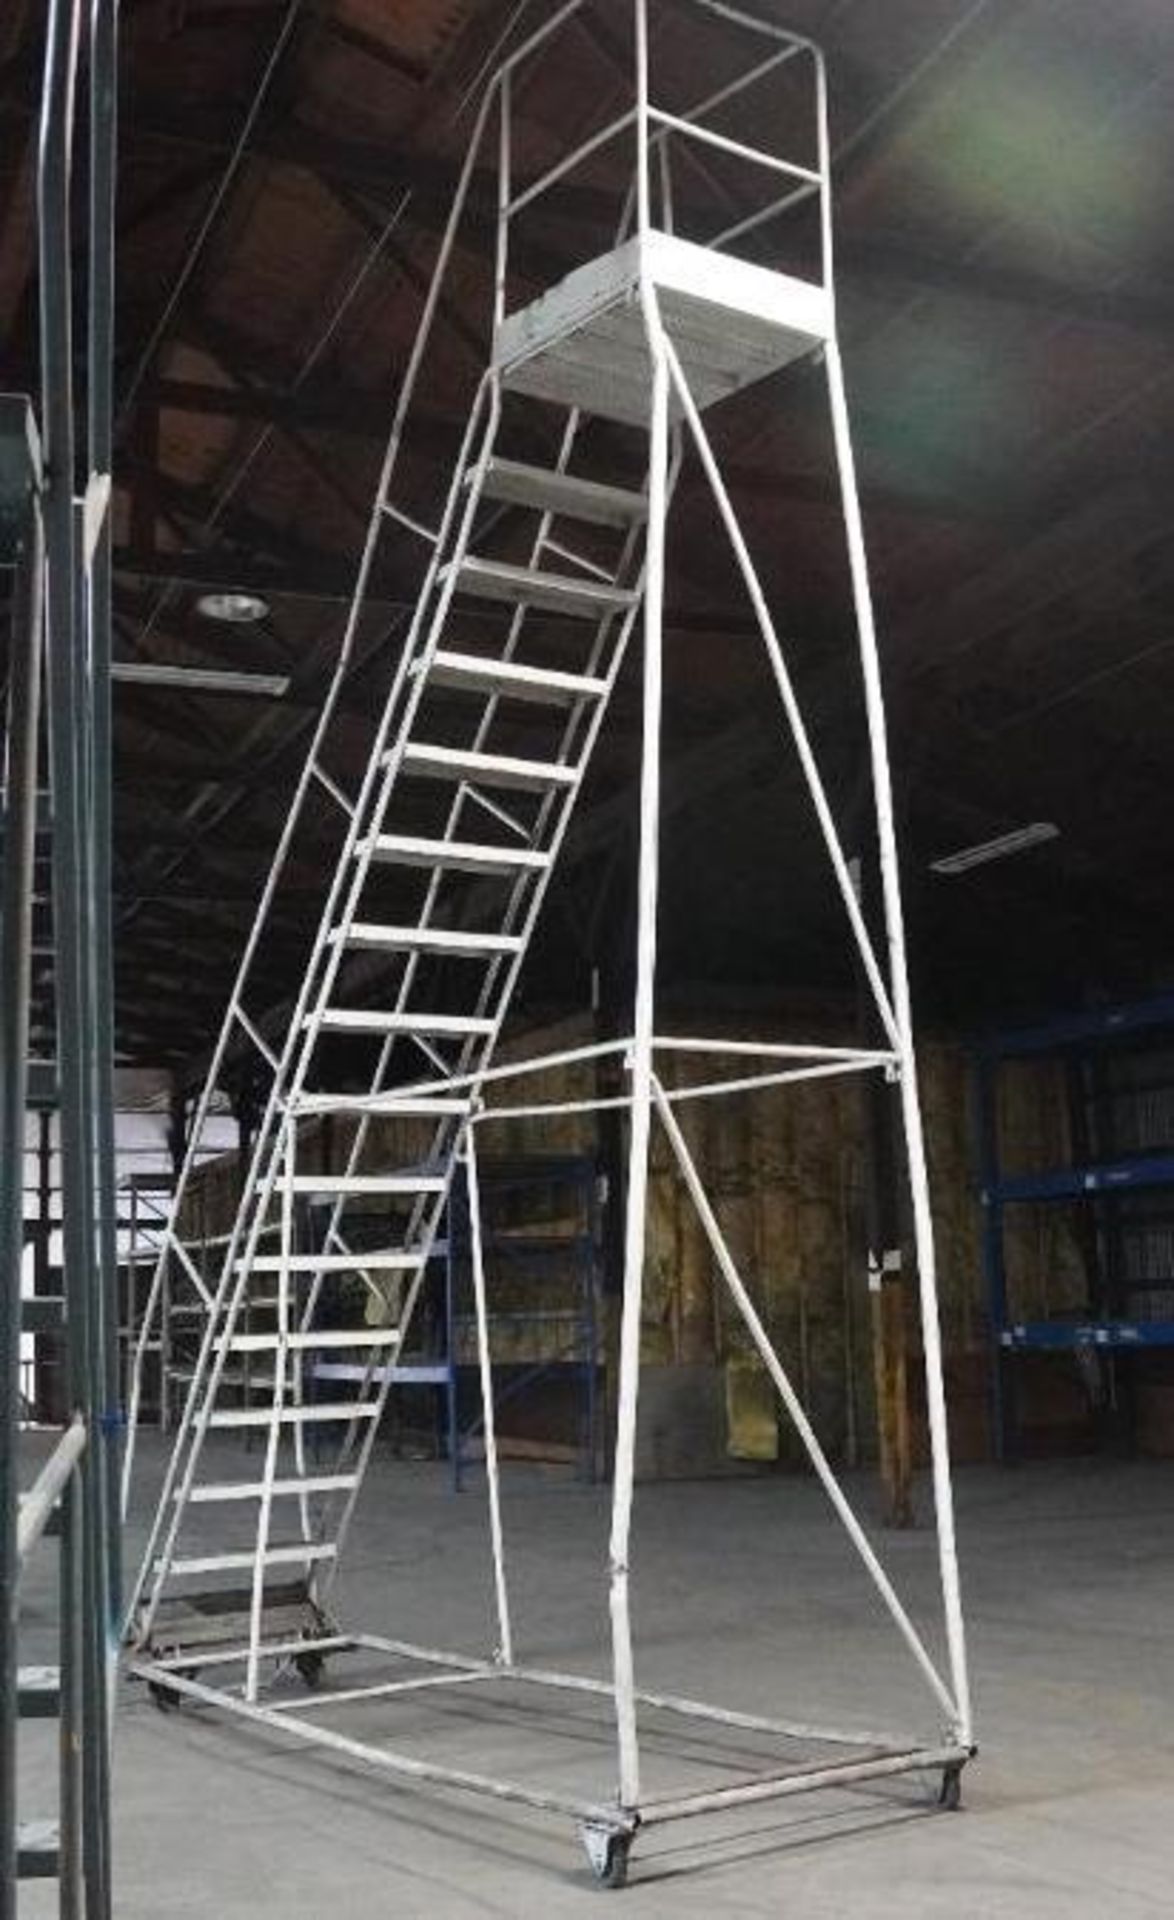 16 Step Safety Ladder - Image 3 of 7